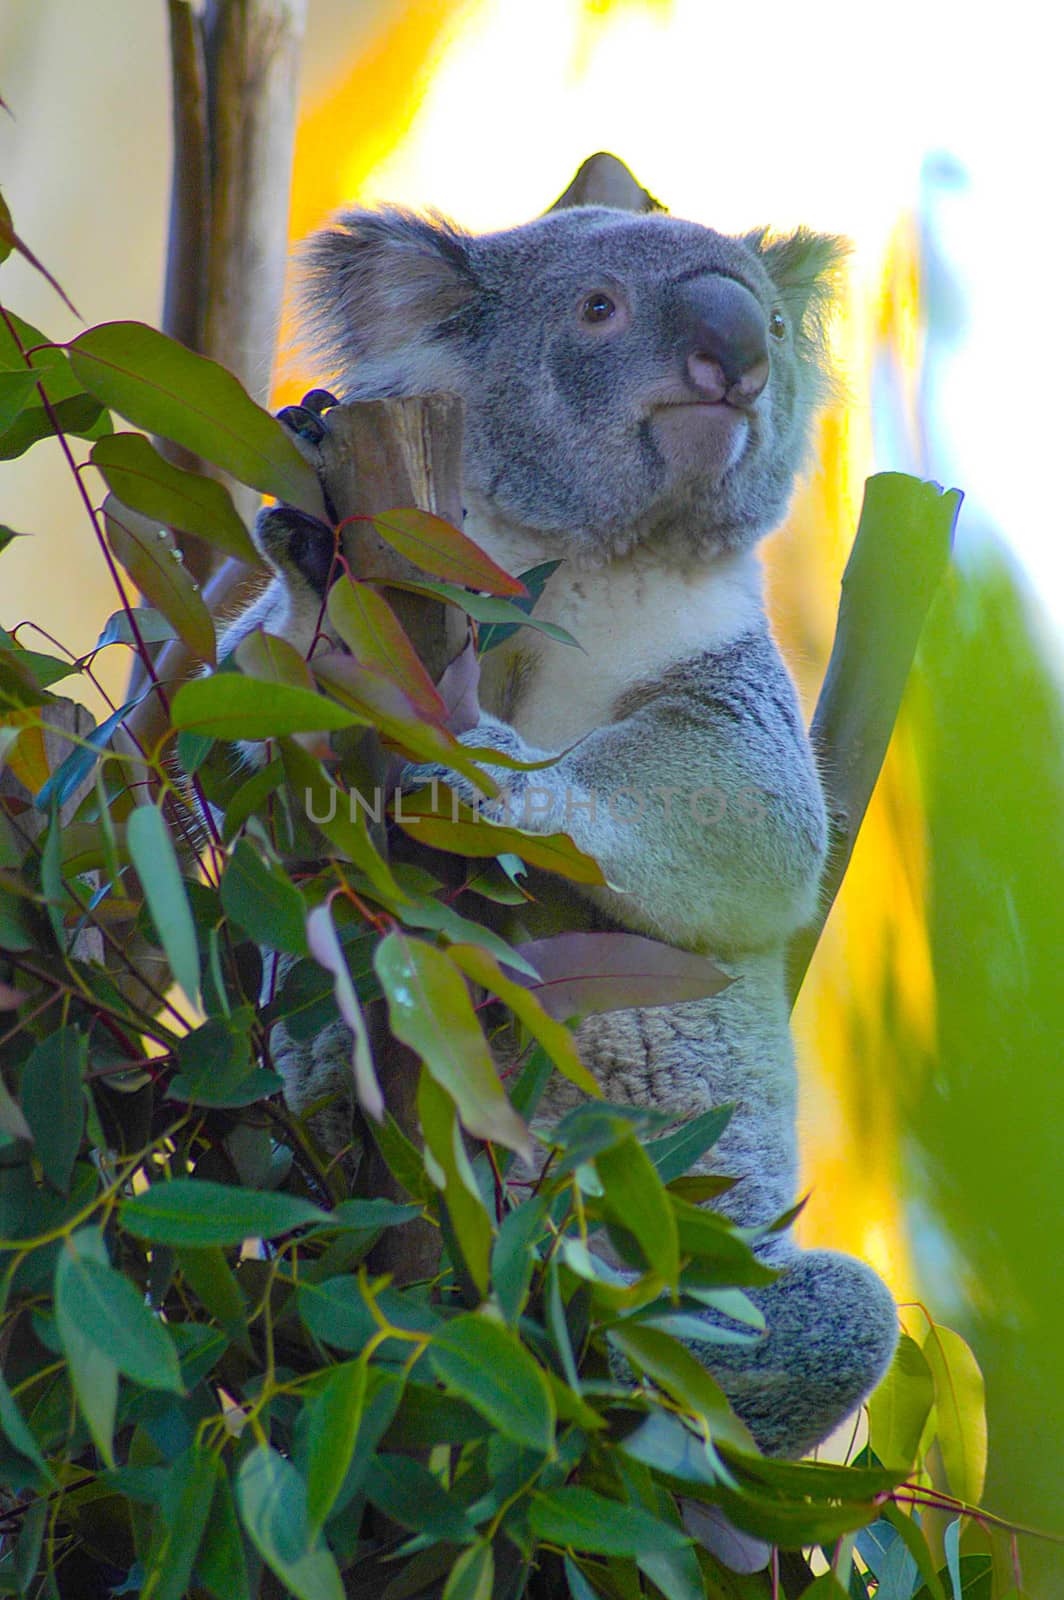 Koala on tree in Zoo by cestes001